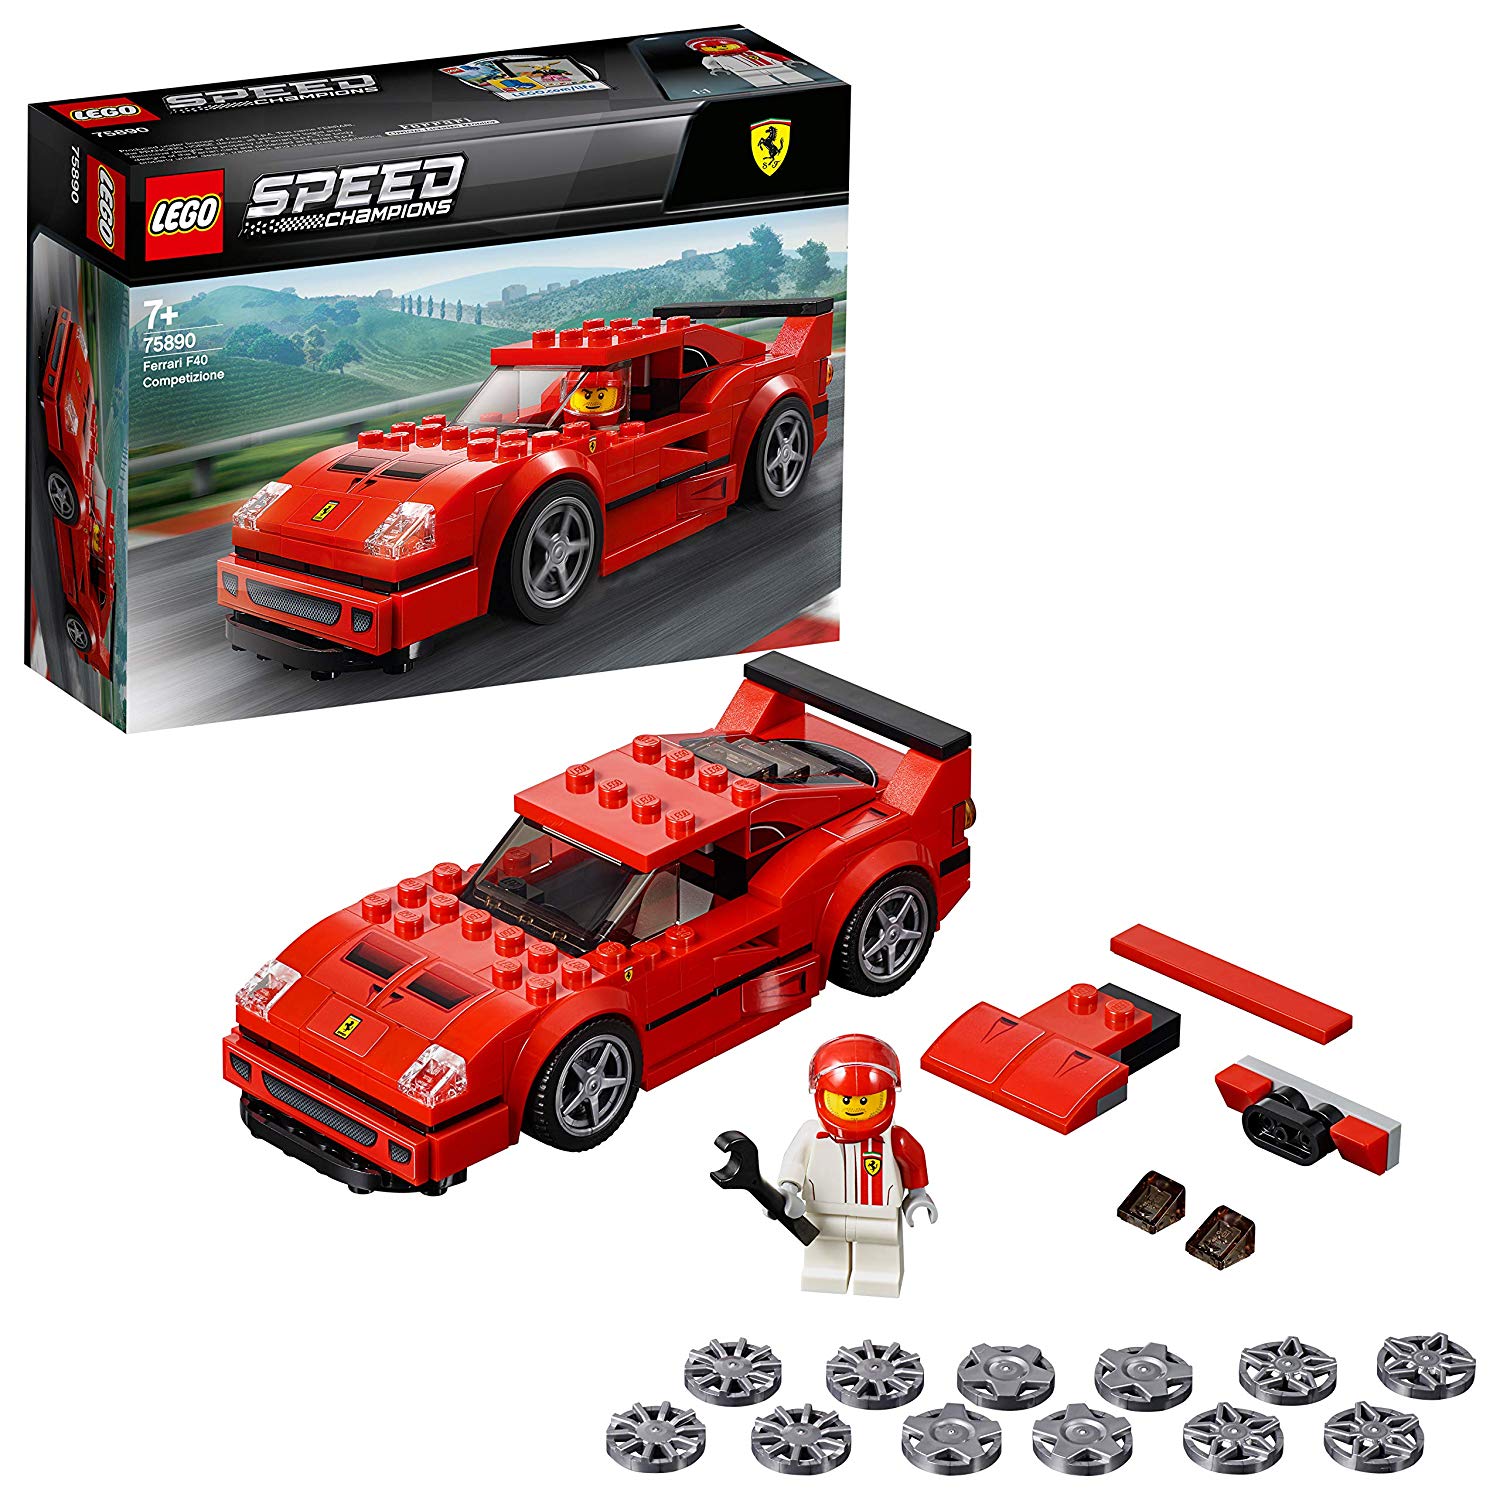 LEGO Speed Champions Ferrari F40 Competizione solo 10,5€